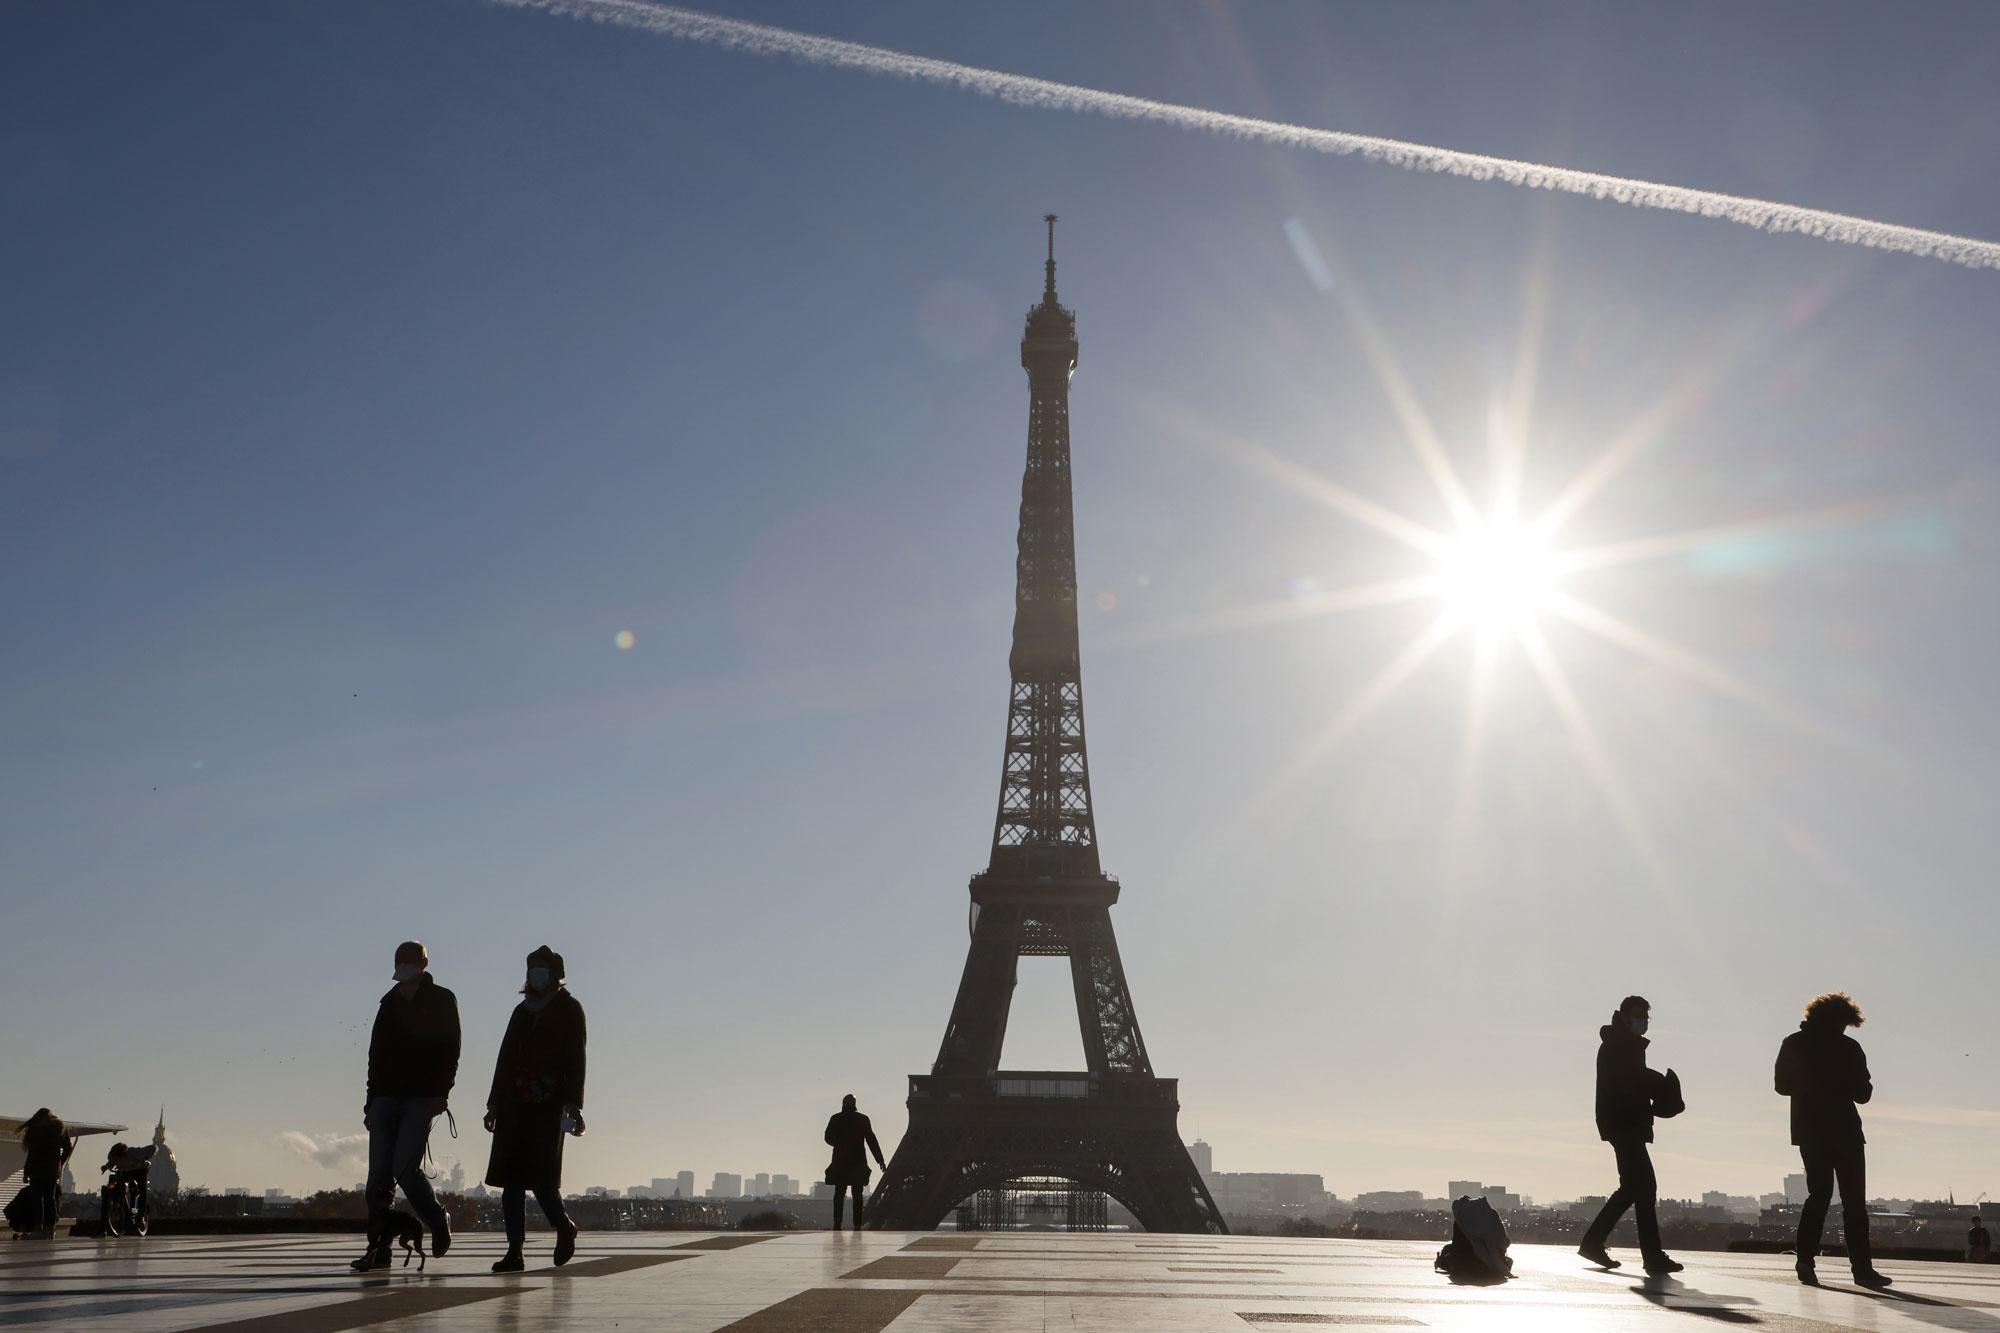 Des passants devant la Tour Eiffel, sur la place du Trocadéro à Paris, le 18 novembre 2020, lors d'un deuxième confinement visant à contenir la propagation de la pandémie de Covid-19.